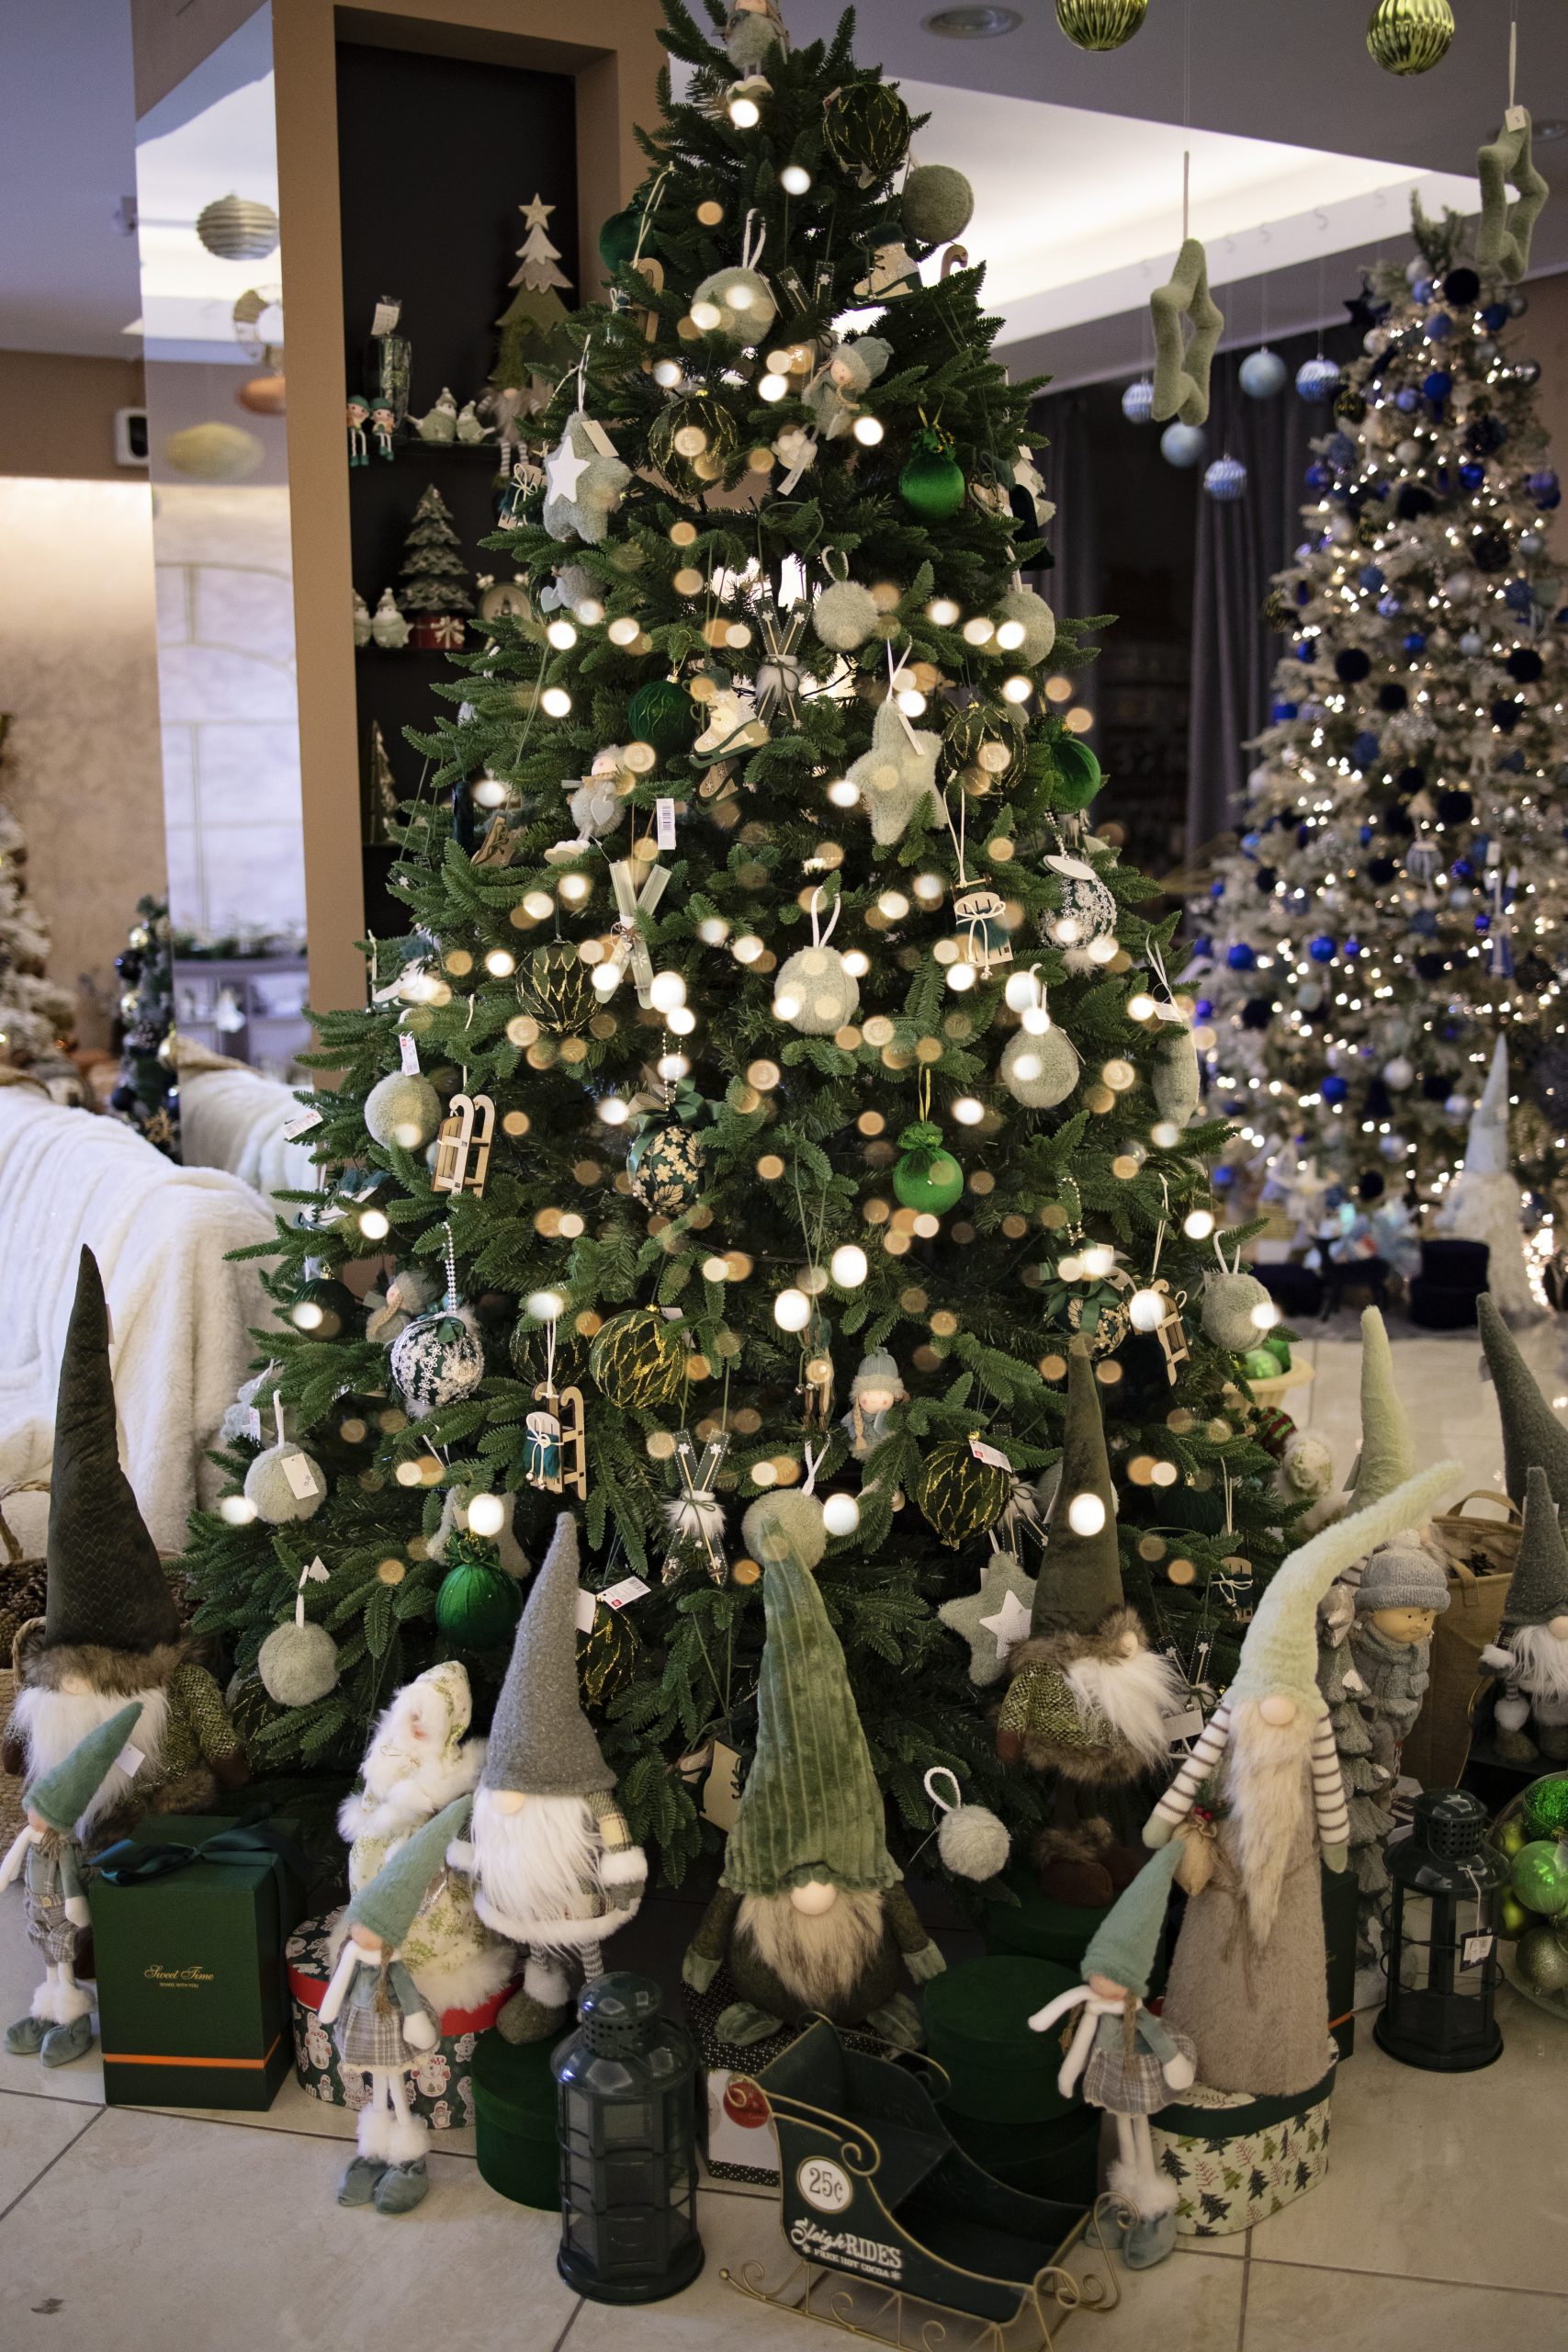 Brad Crăciun decorat complet Bârlad- lIvrare Gratuită - Alegria Christmas Collection 2022